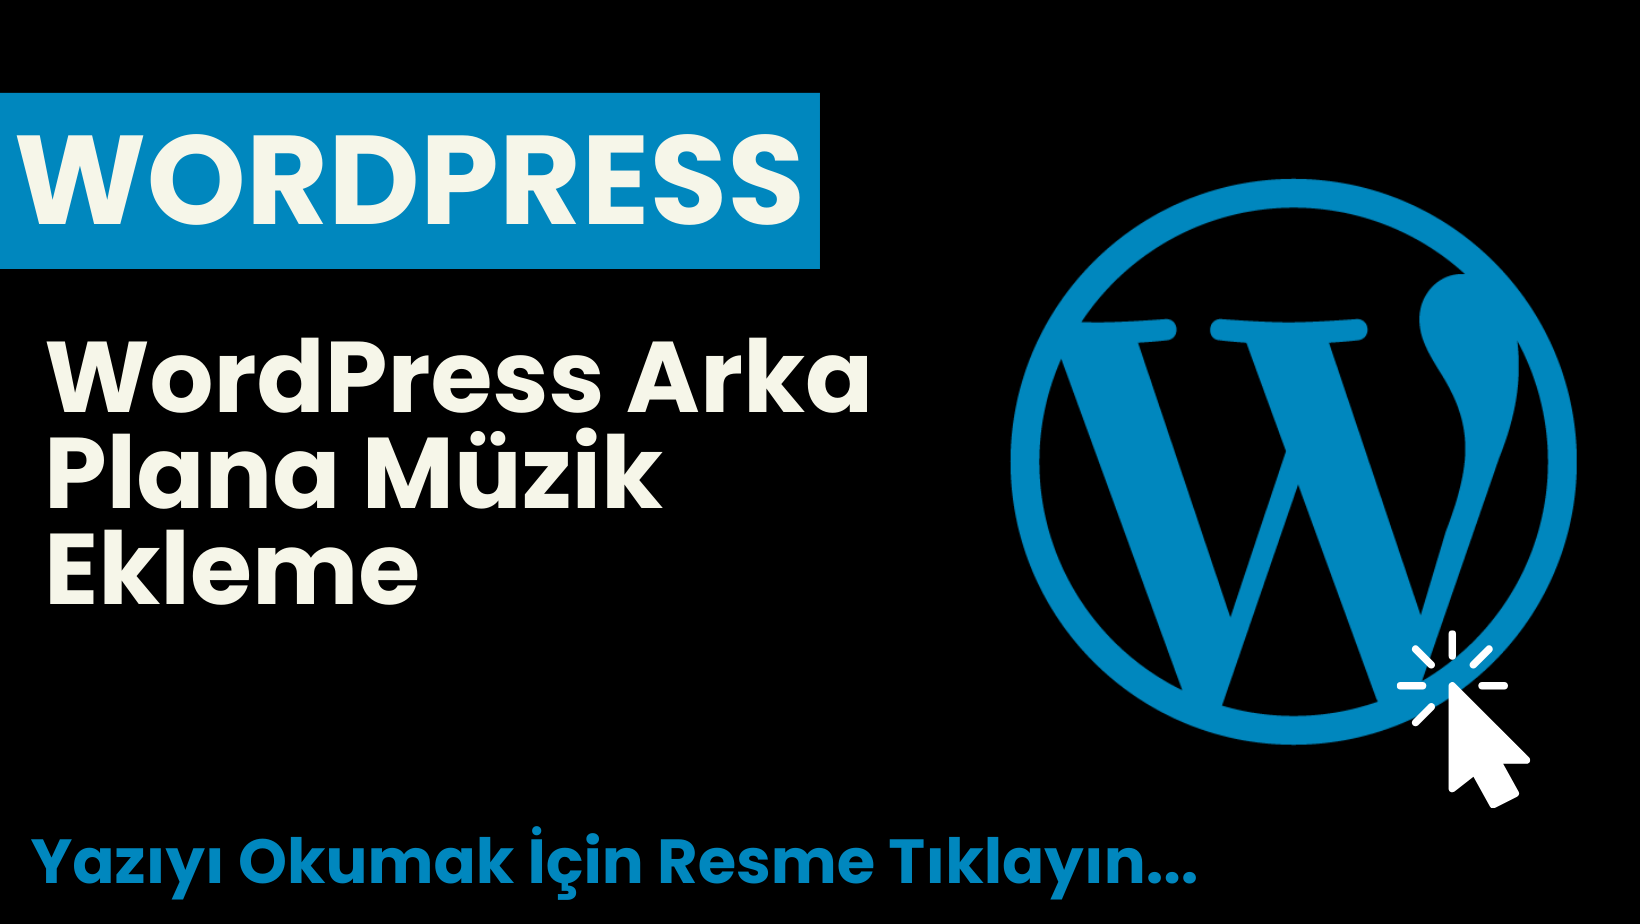 WordPress Arka Plana Müzik Ekleme